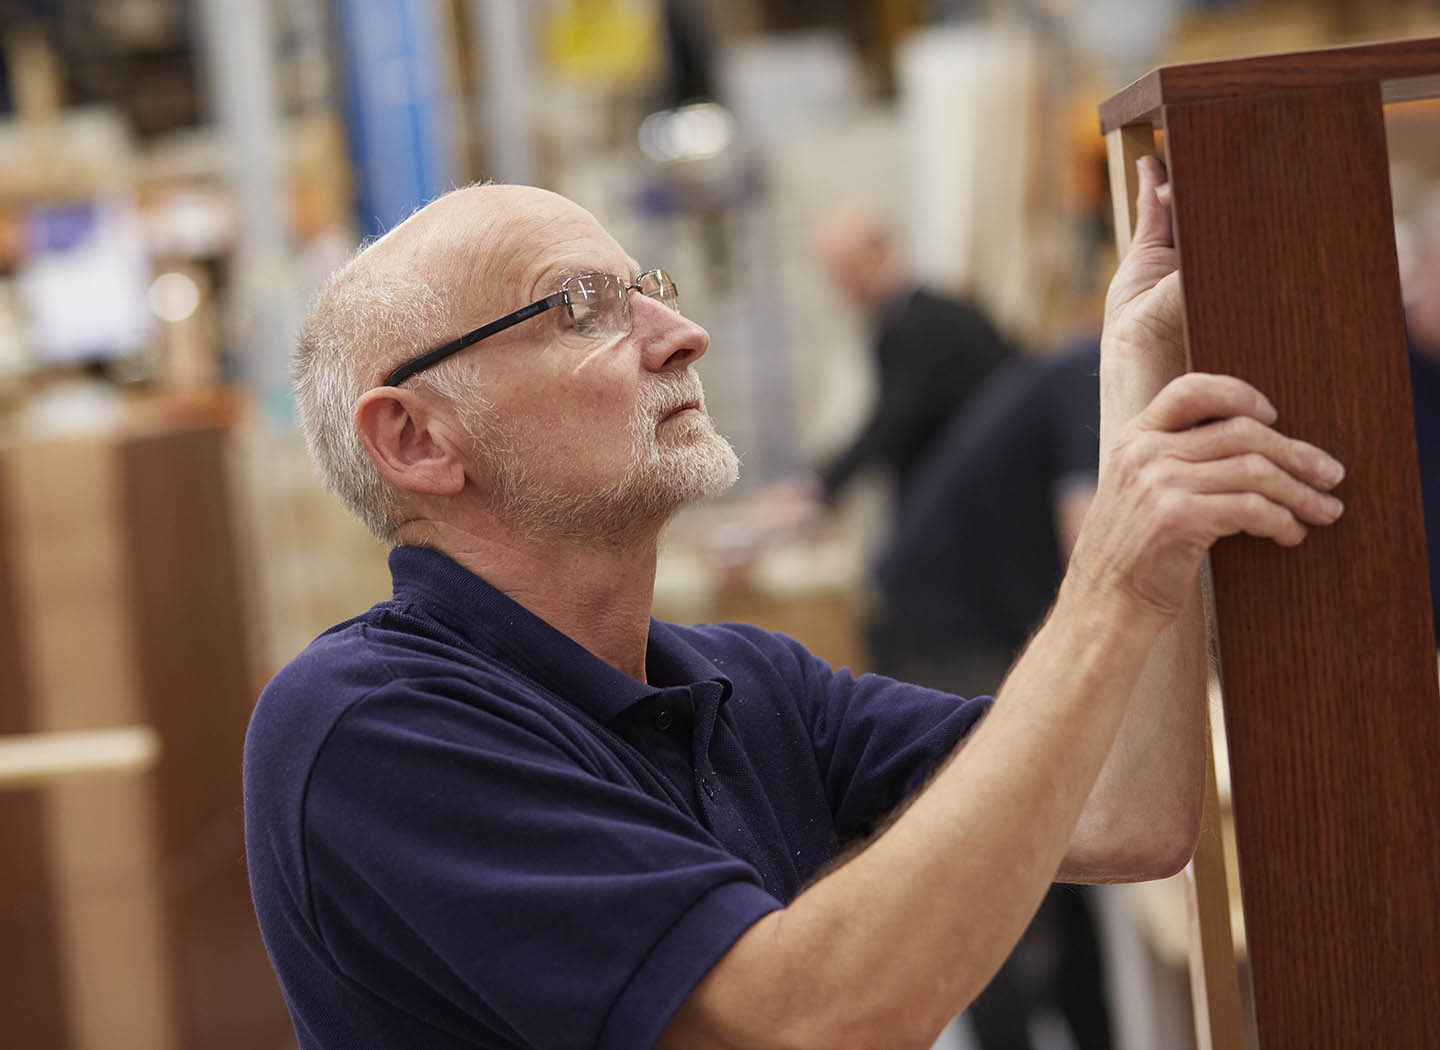 Workman handcrafting Strachan furniture